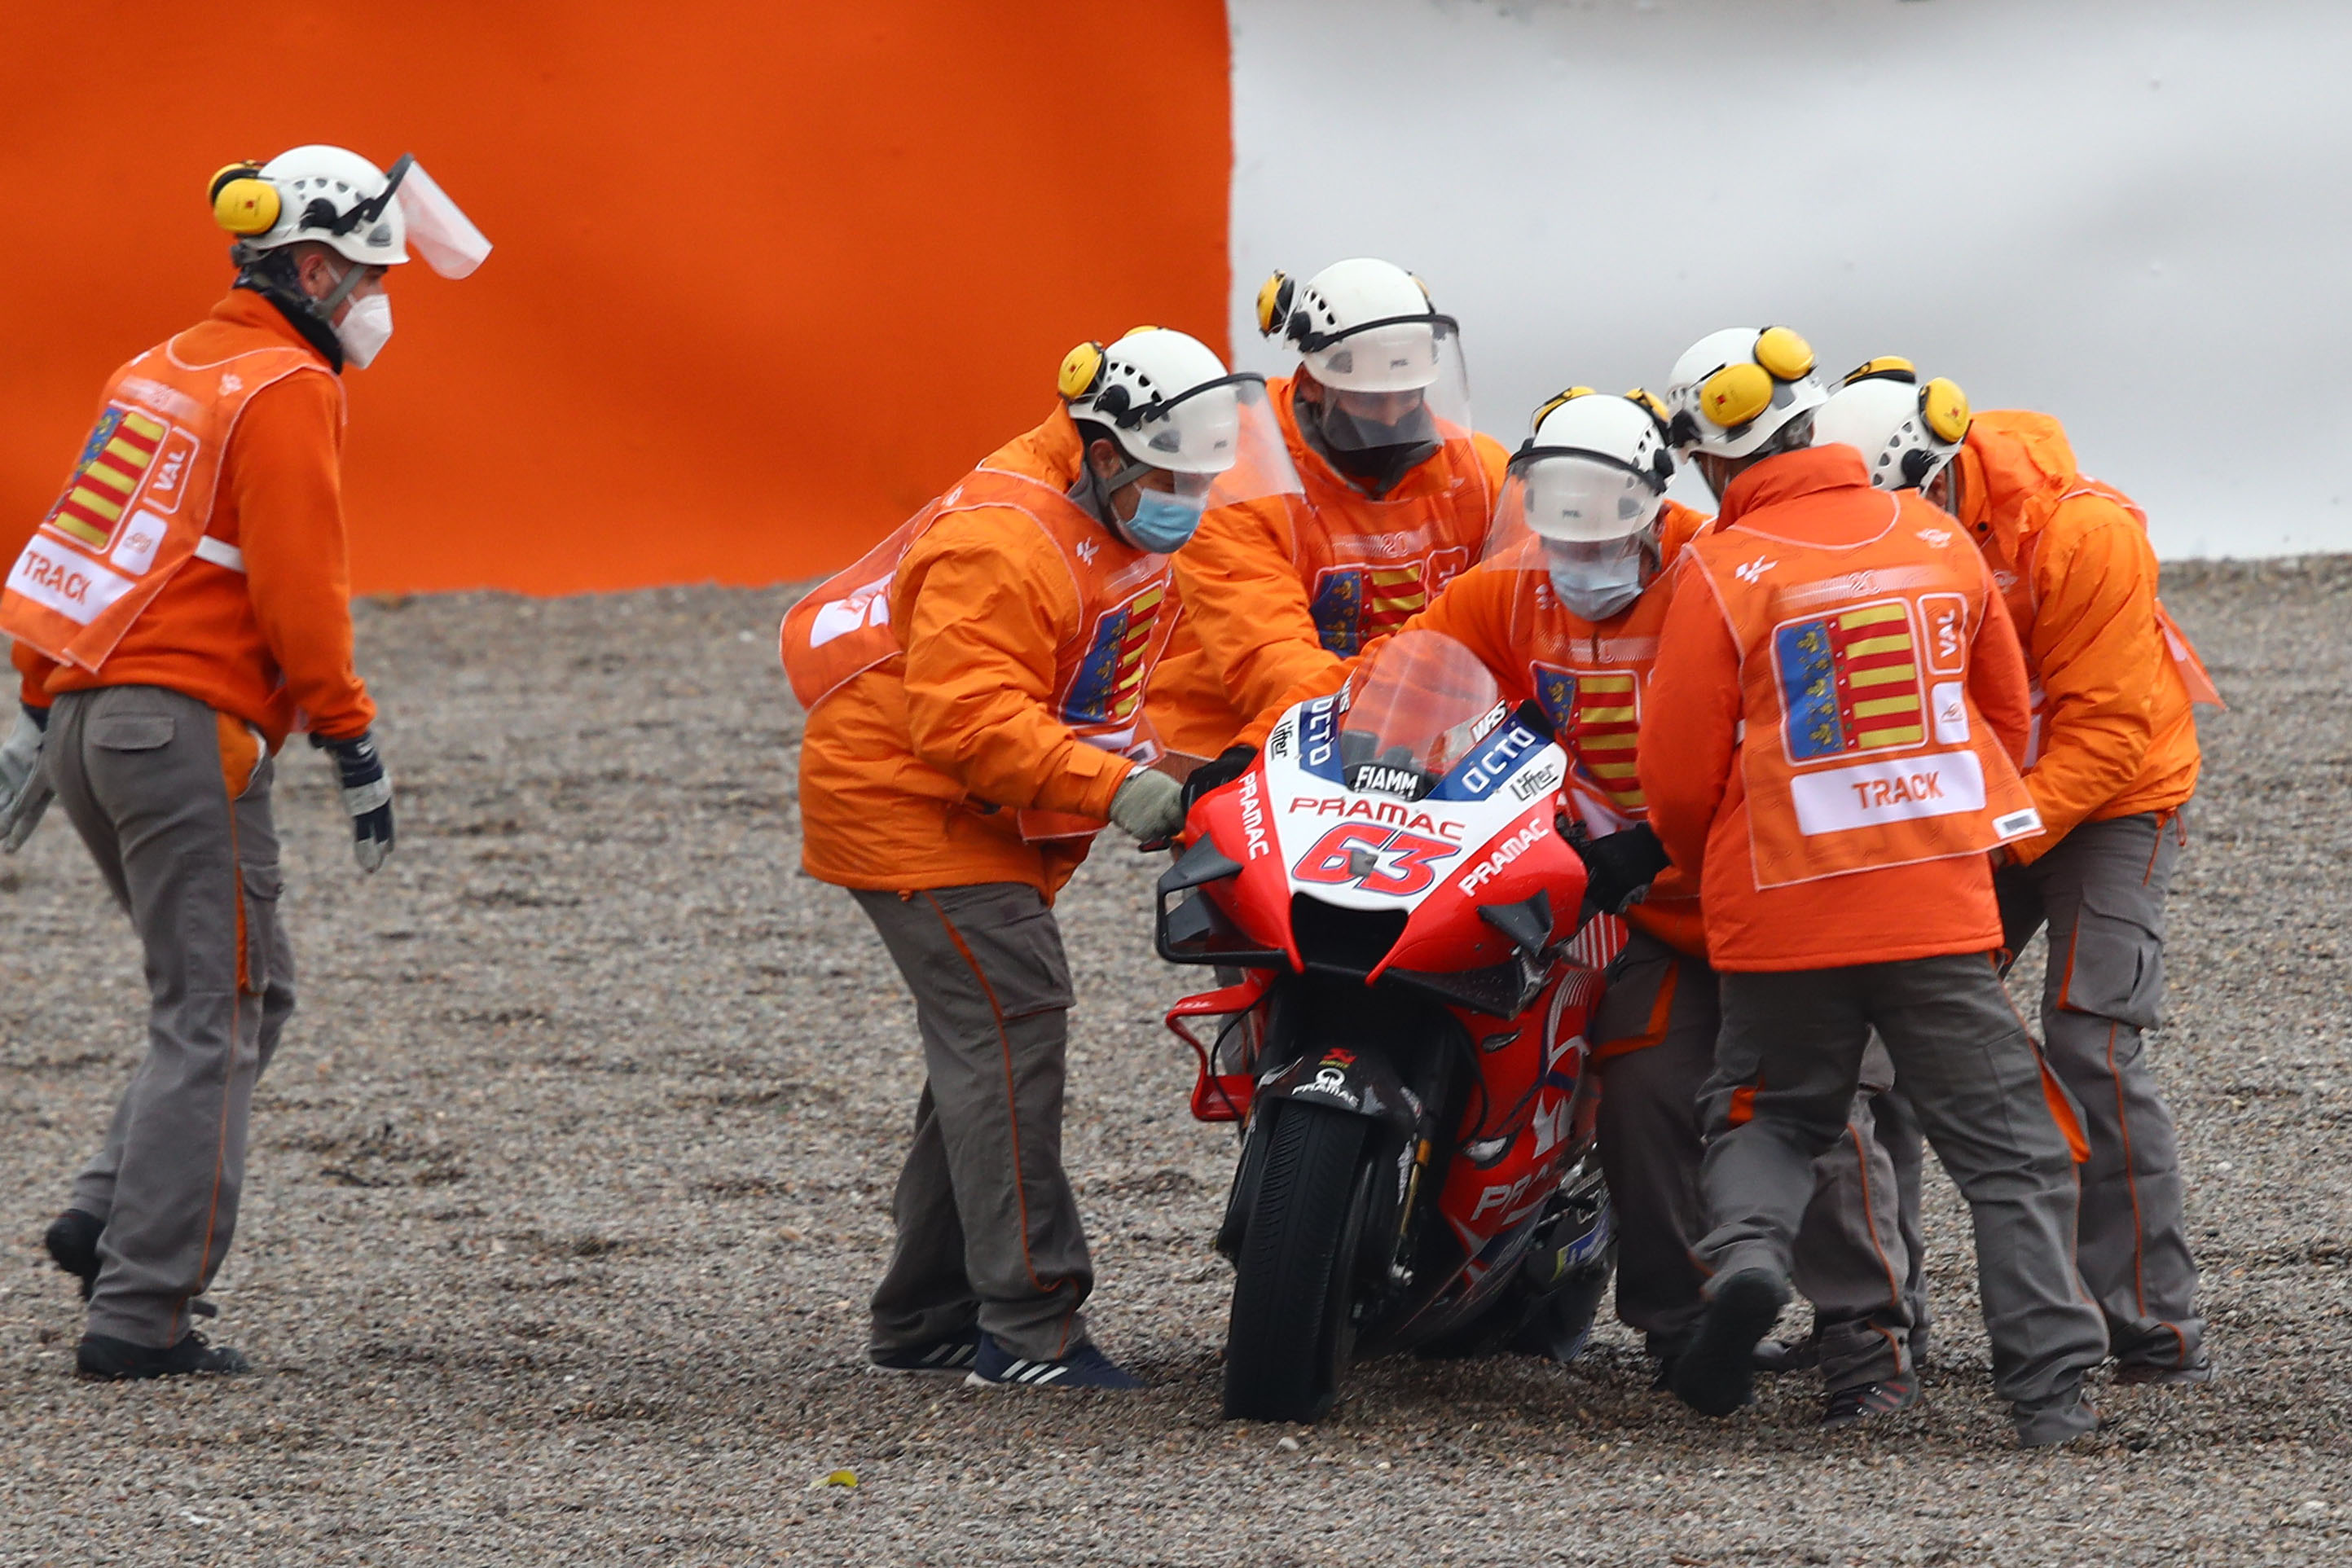 Francesco Bagnaia crash Valencia MotoGP 2020